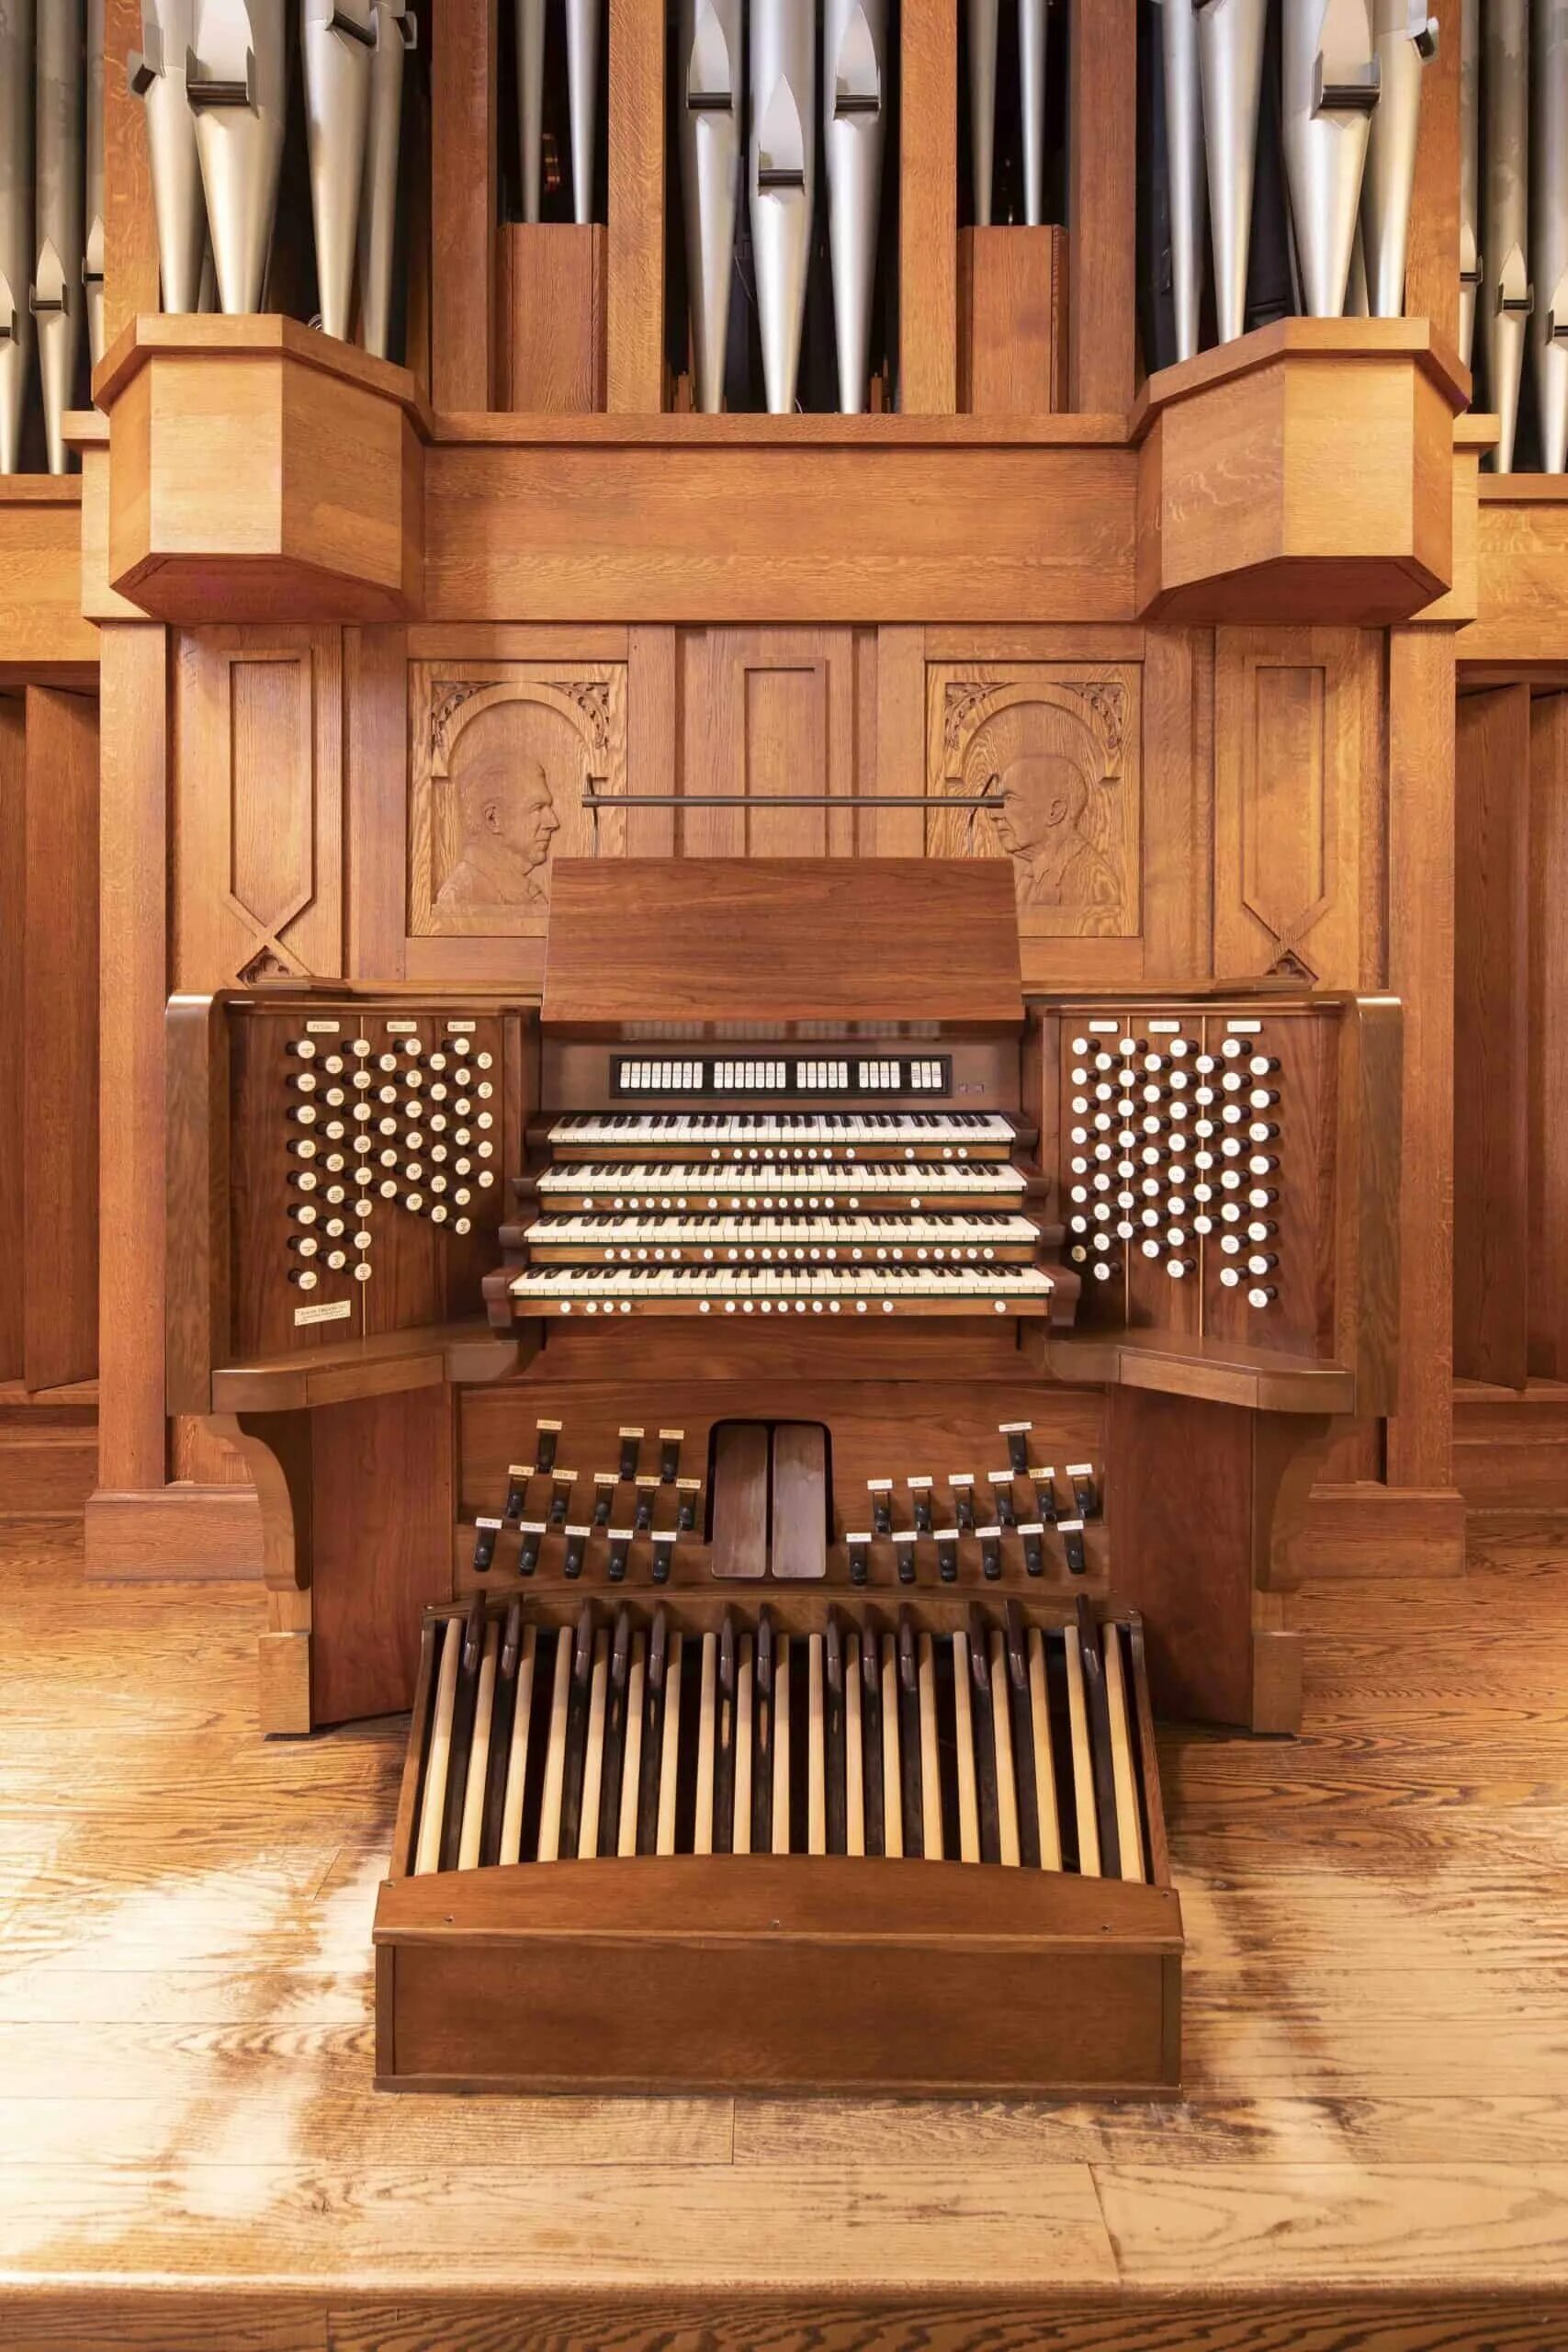 Organ. Орган инструмент. Орган музыкальный инструмент. Самый большой орган музыкальный инструмент. Клавишные инструменты орган.